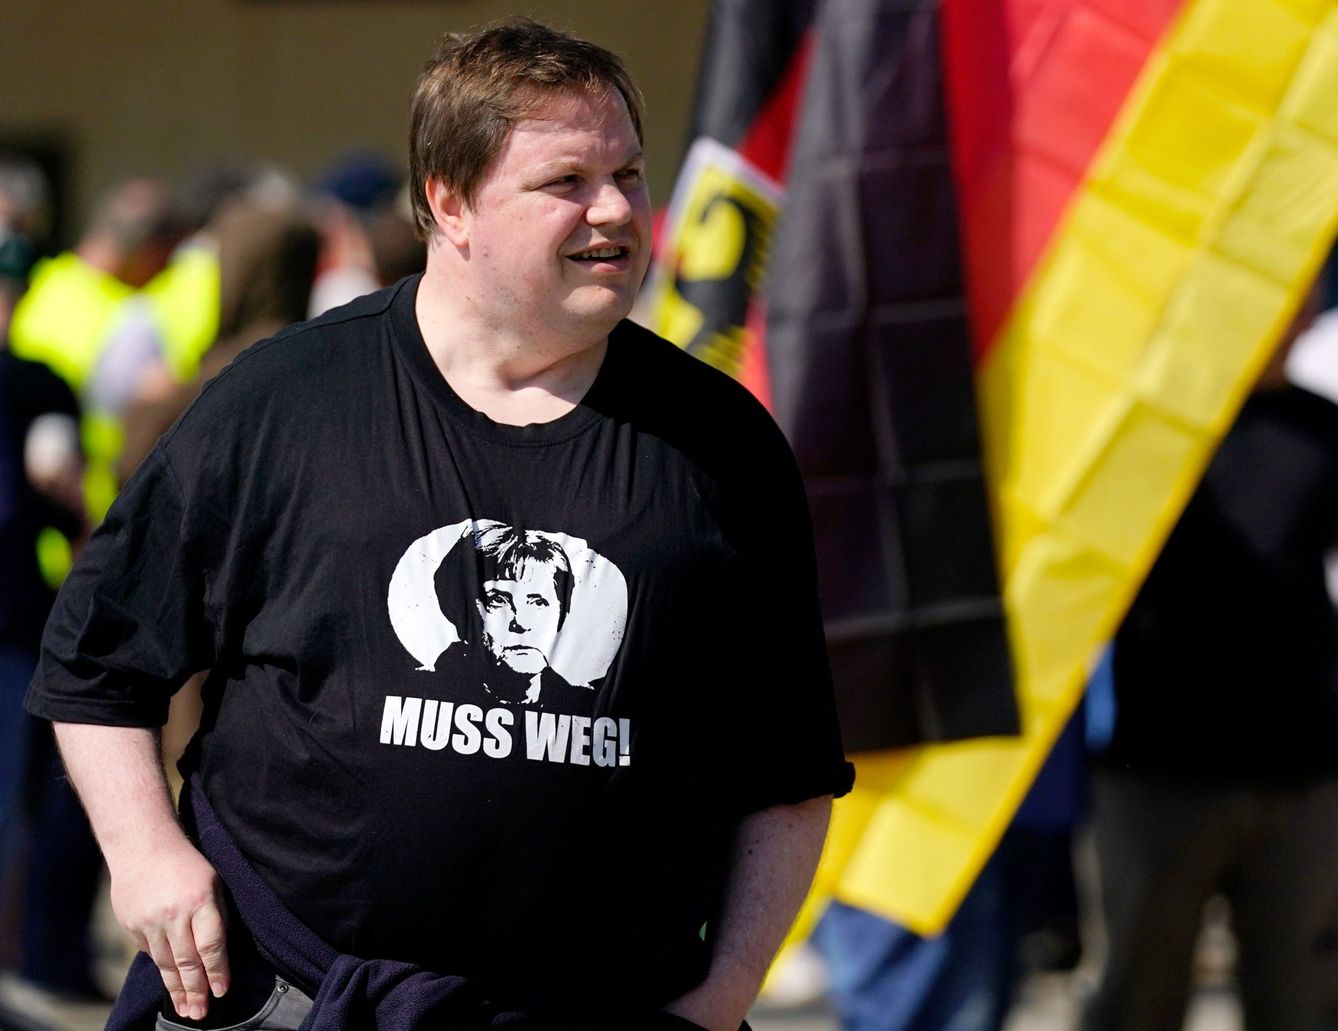 Simpatizante de AfD con una camiseta con la que insta a Merkel a marcharse. (EFE)